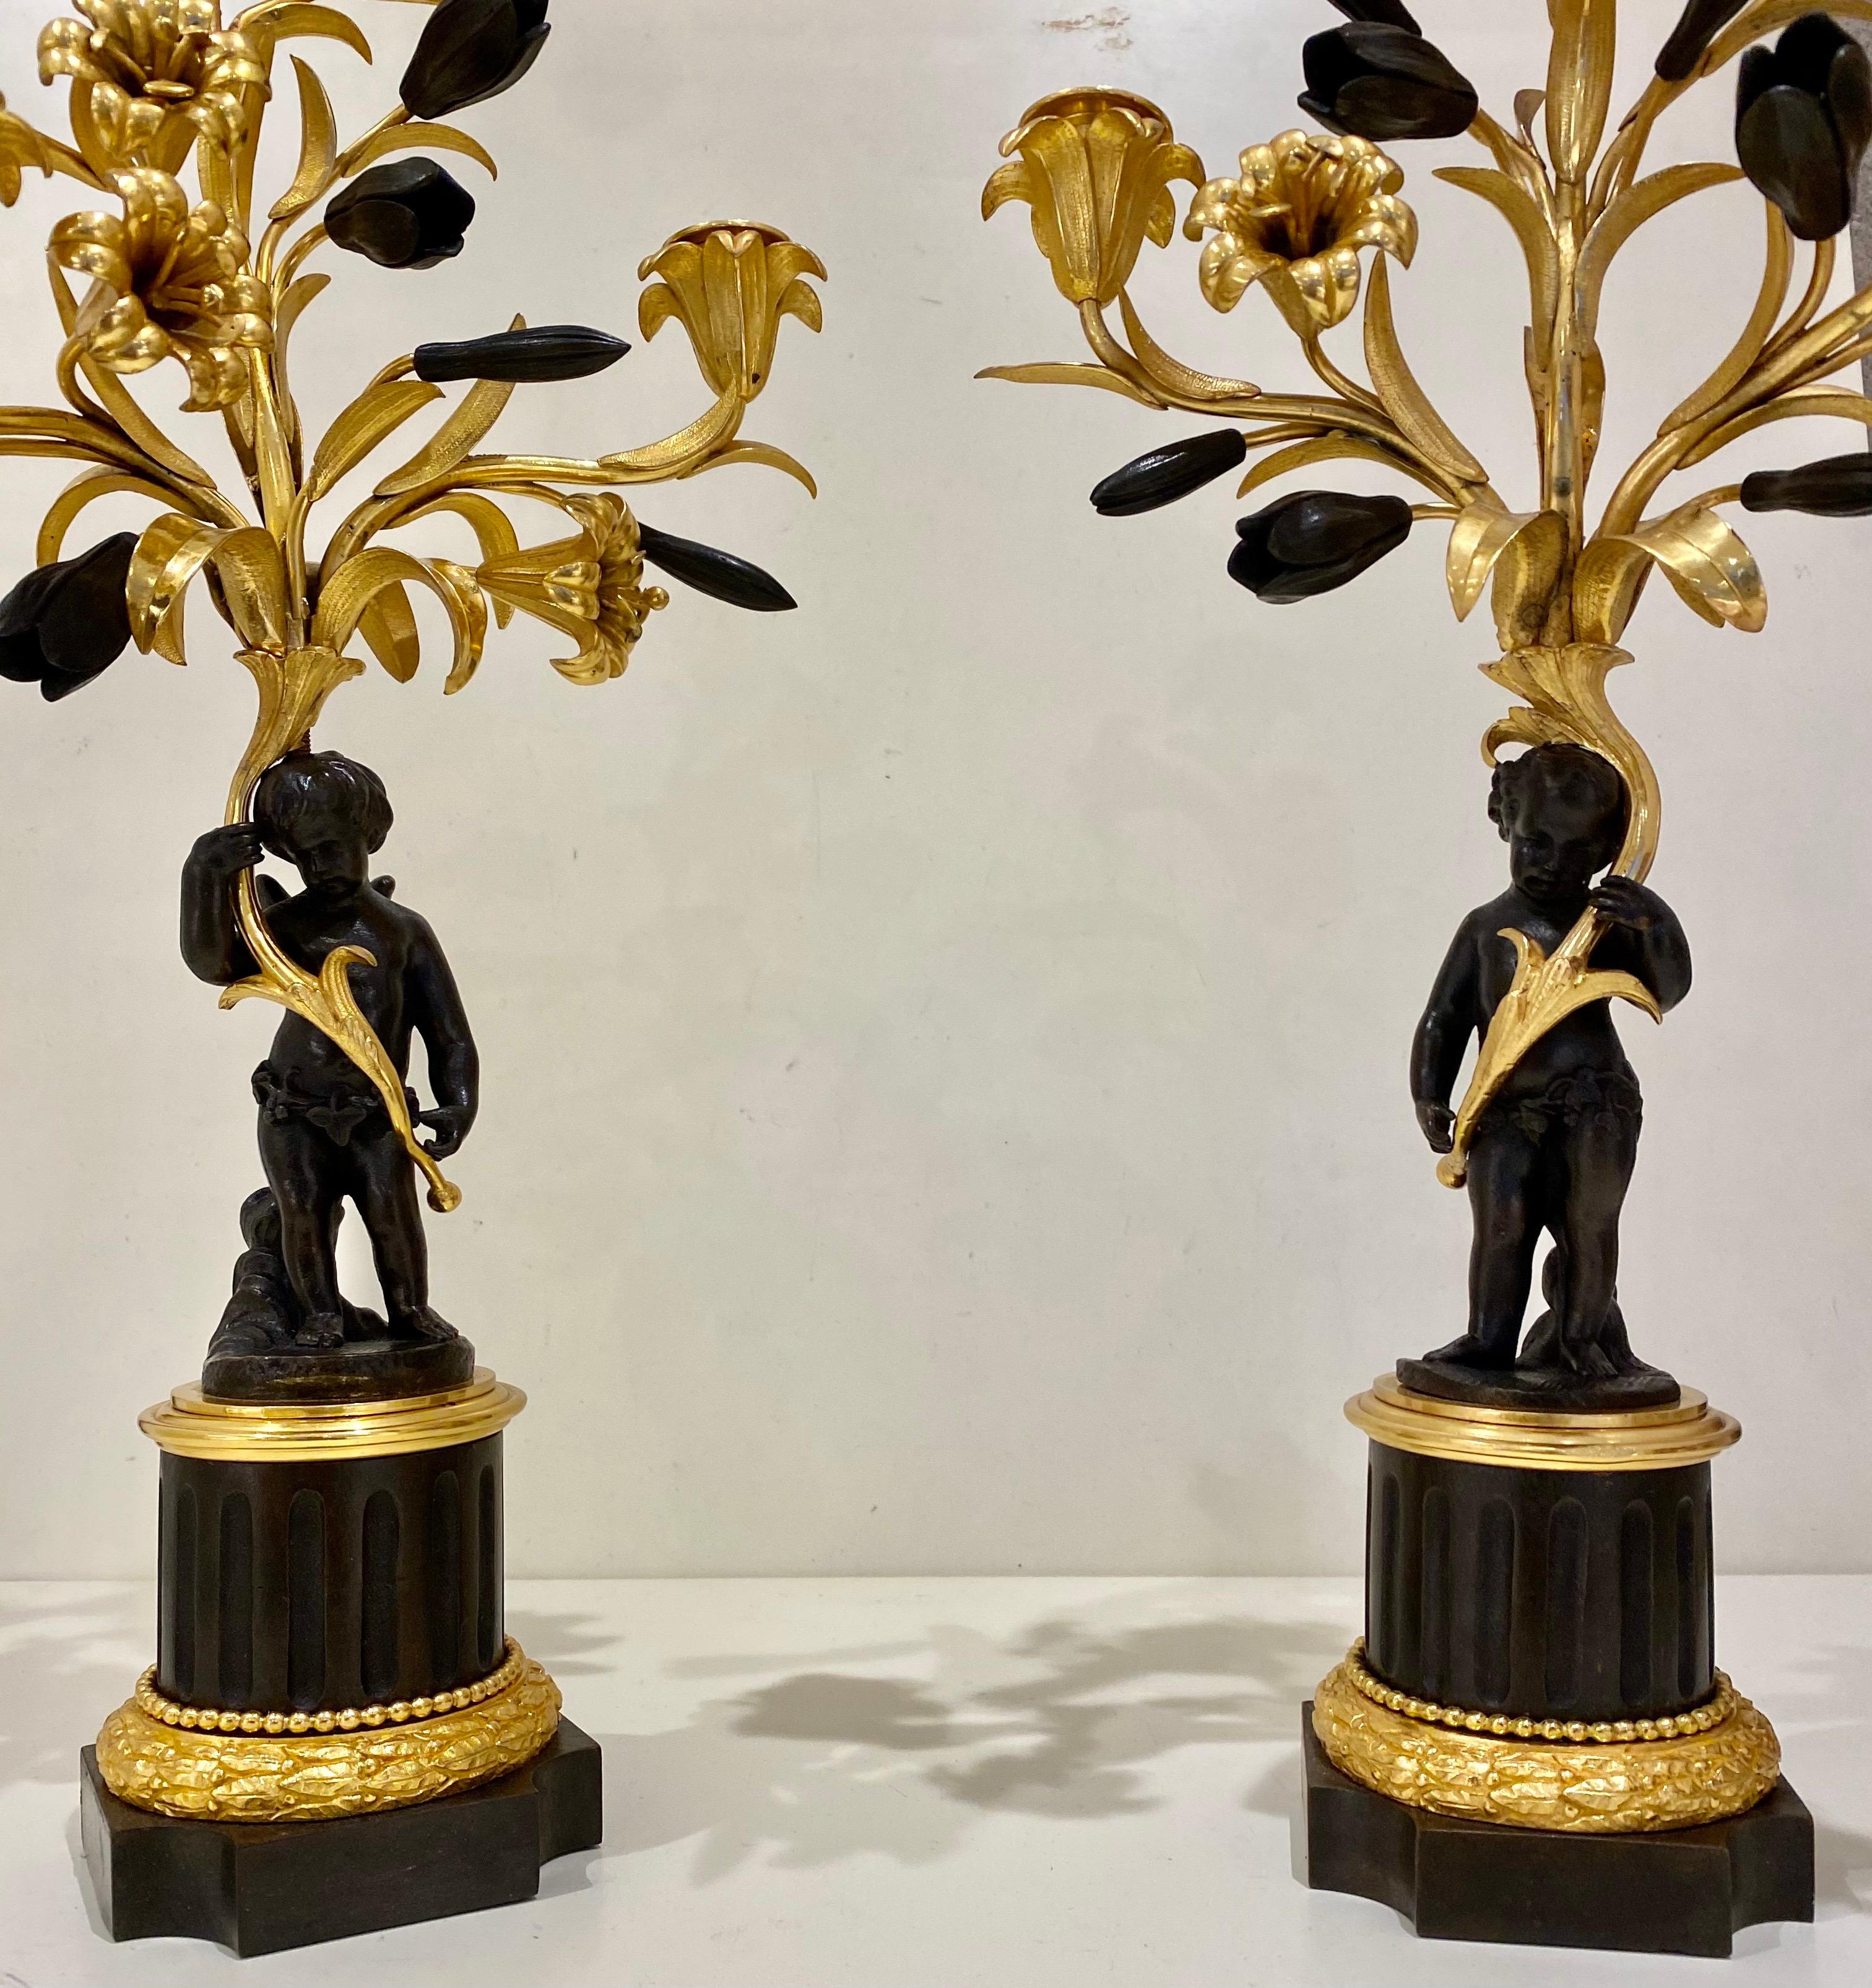 Zwei Cherub-Kandelaber aus zweifarbiger Bronze, französisch, um 19. Jahrhundert, die drei Zweige jeweils mit abnehmbaren Tropfschalen. Circa 1880 und Messung 19 Zoll (49,5 cm) hoch durch 9 Zoll (19 cm) breit. 
Dieses Paar Bronzekandelaber aus dem